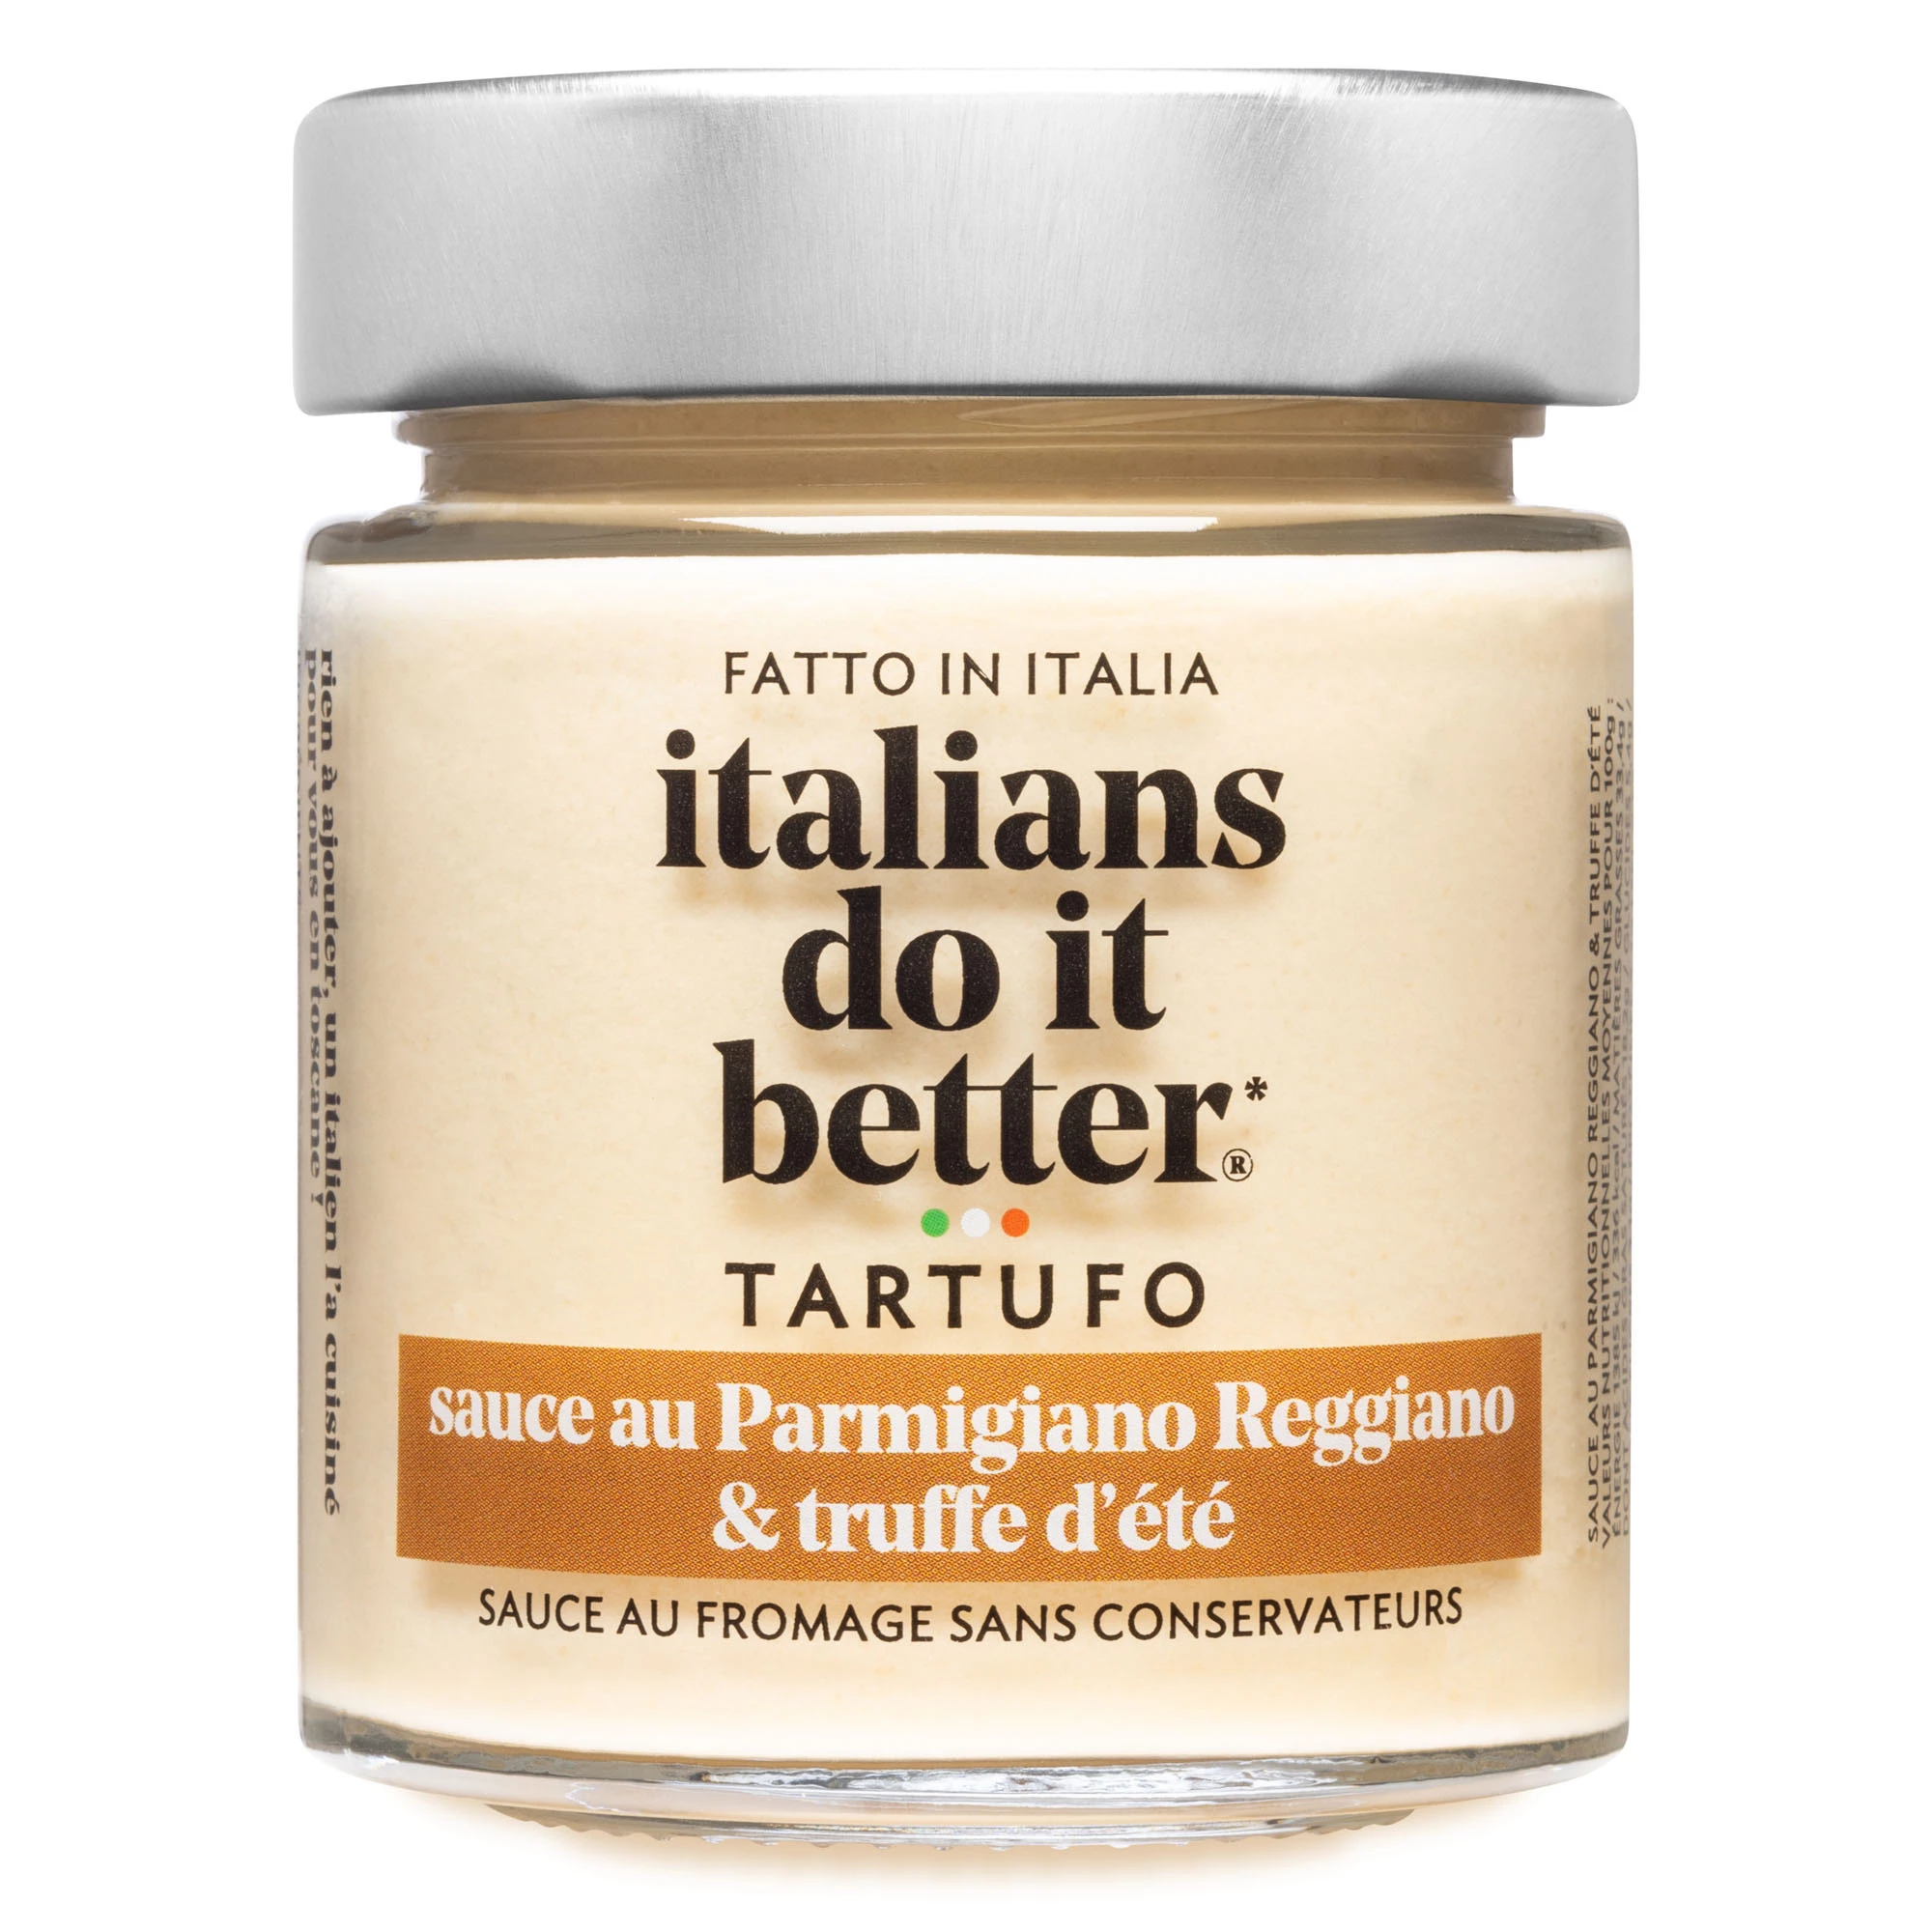 Creme de Parmigiano et truffe 130g - الإيطاليون يفعلون ذلك بشكل أفضل